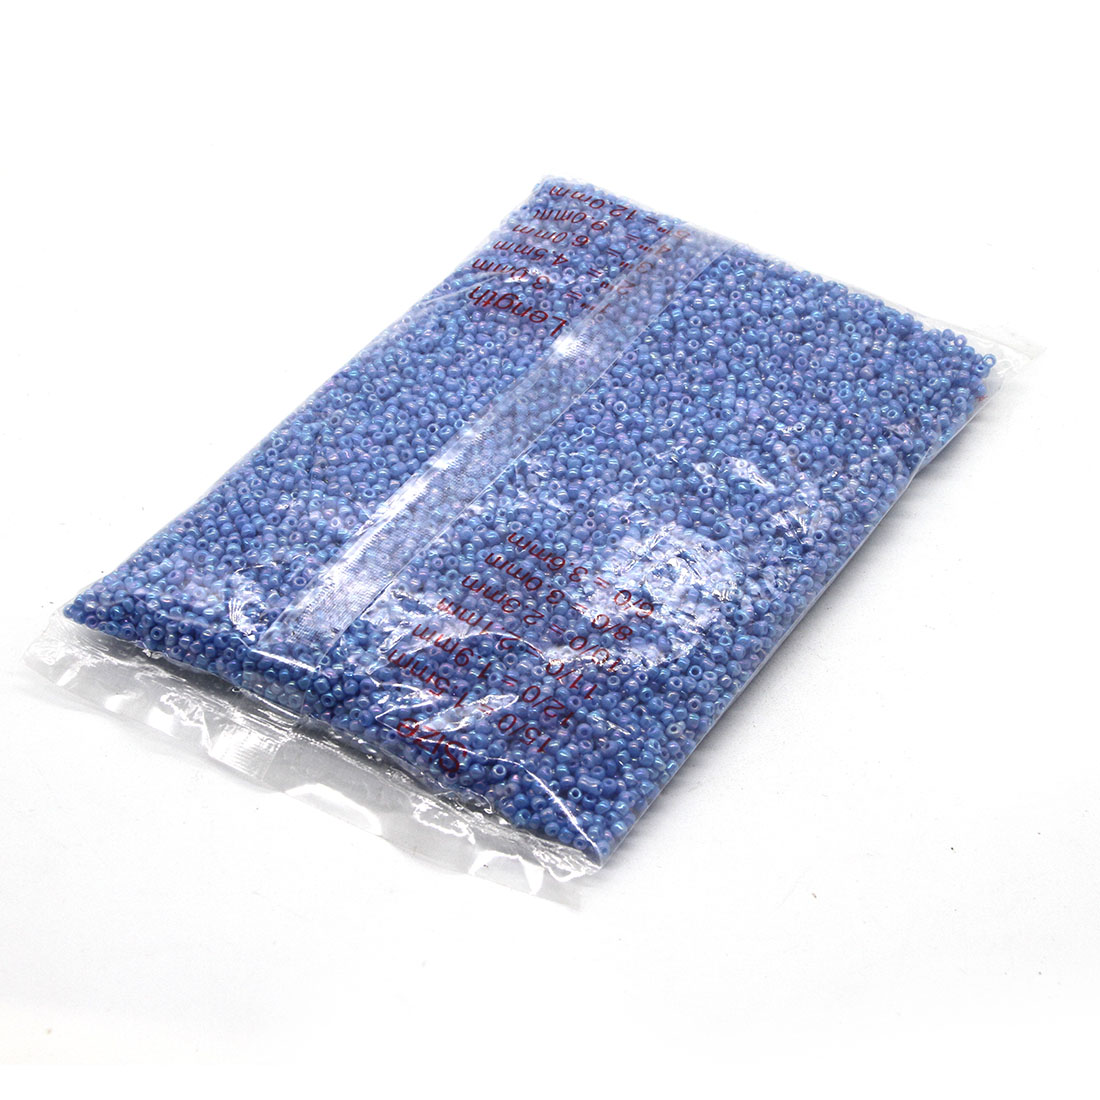 Deep blue 3mm 10,000 packs